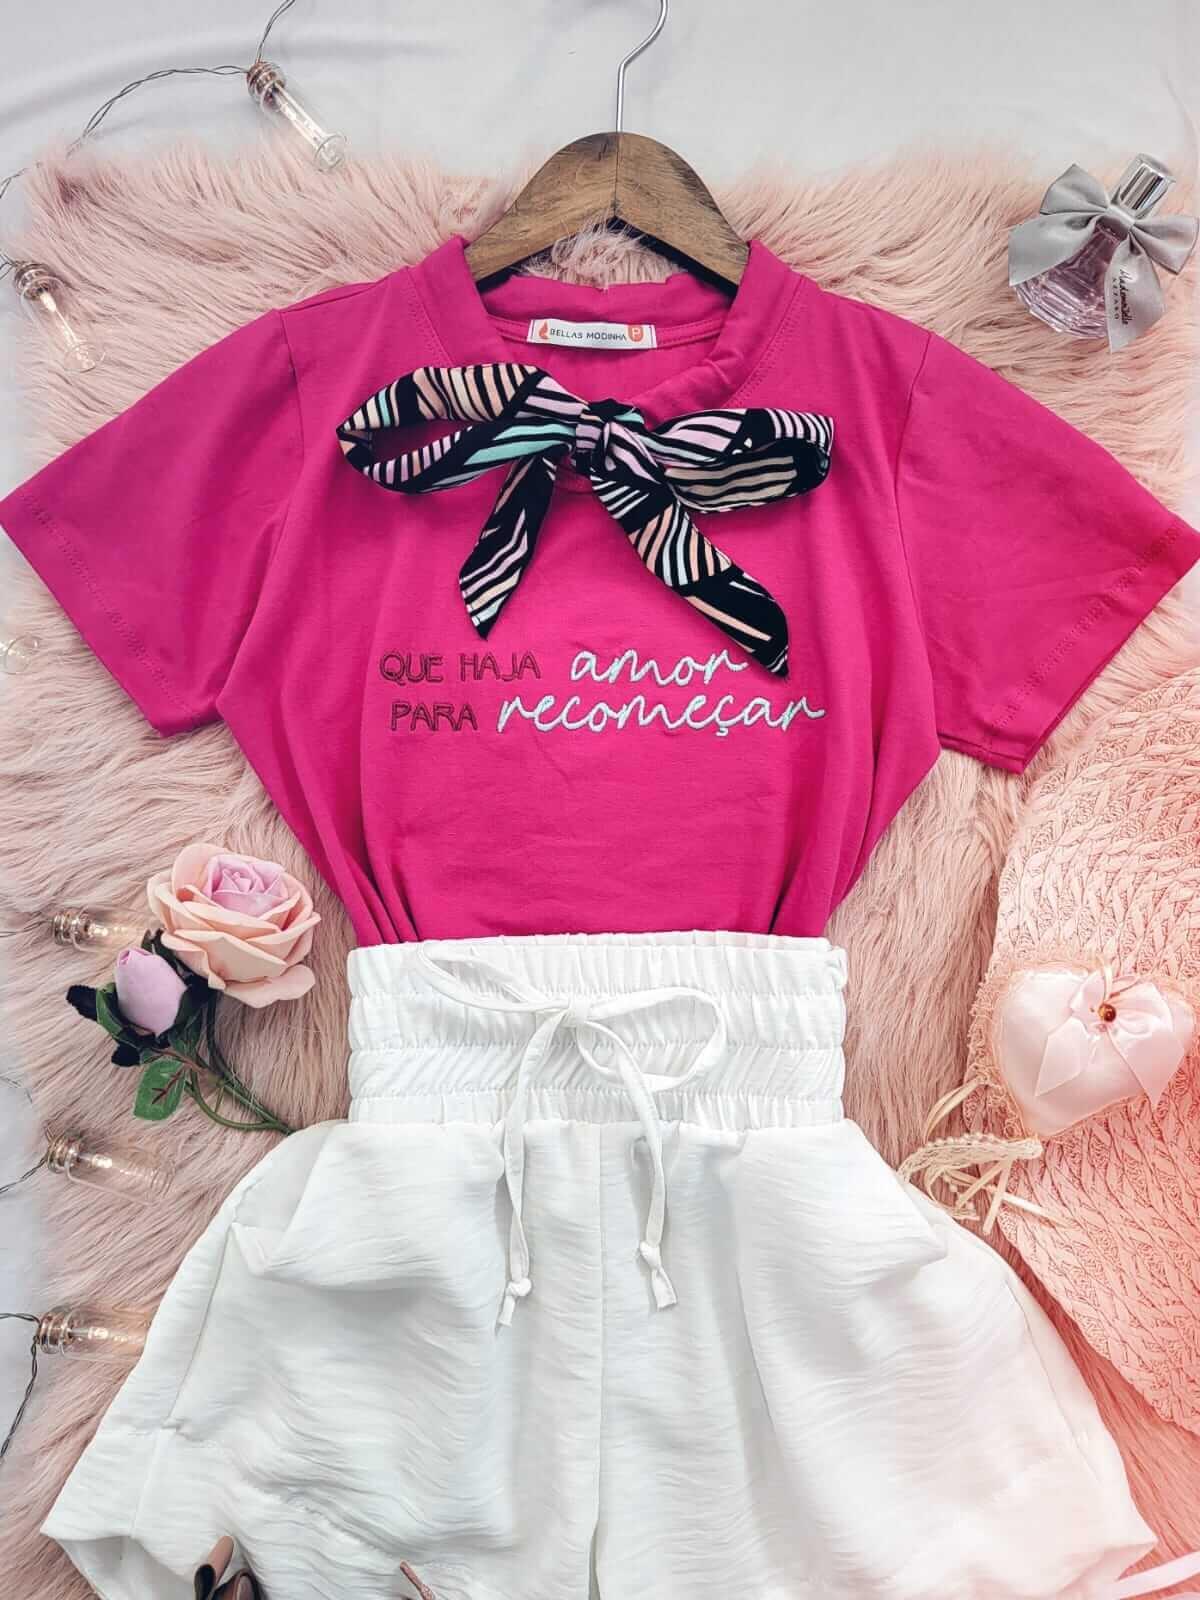 T-shirt Blusa Feminina de Luxo Bordada Gravatinha Pink - a partir